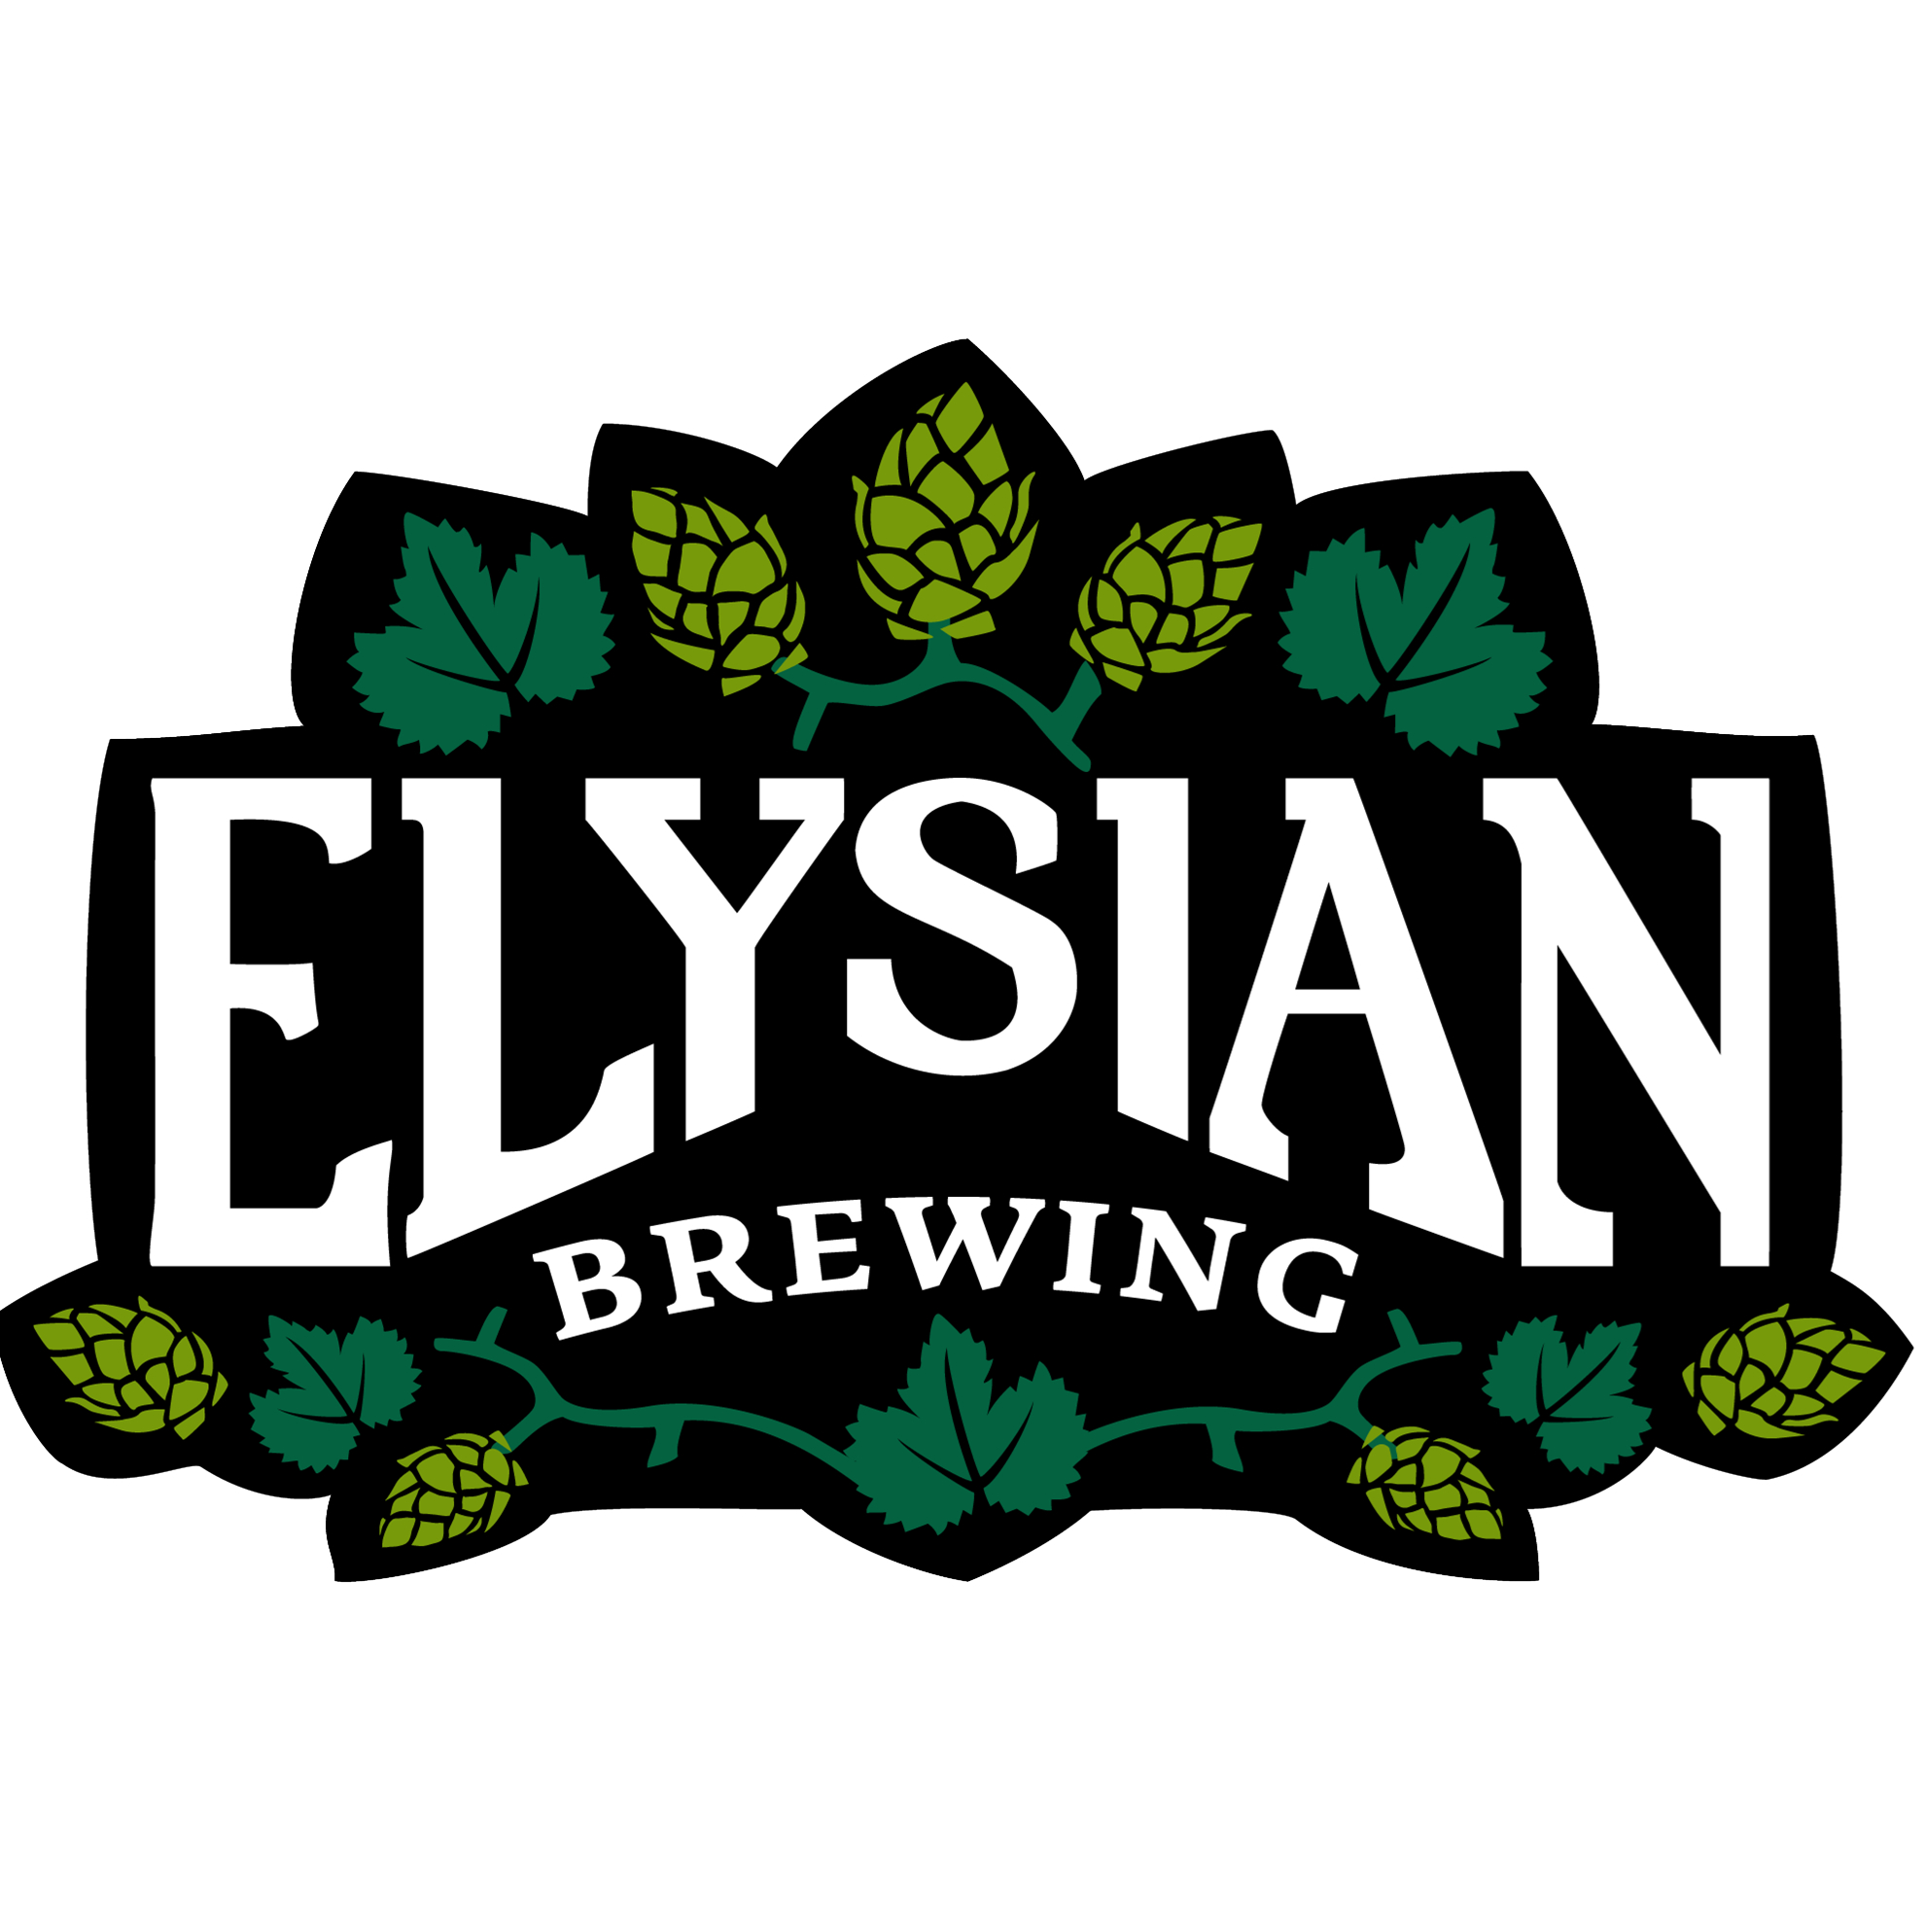 elysian_brewing3.jpg